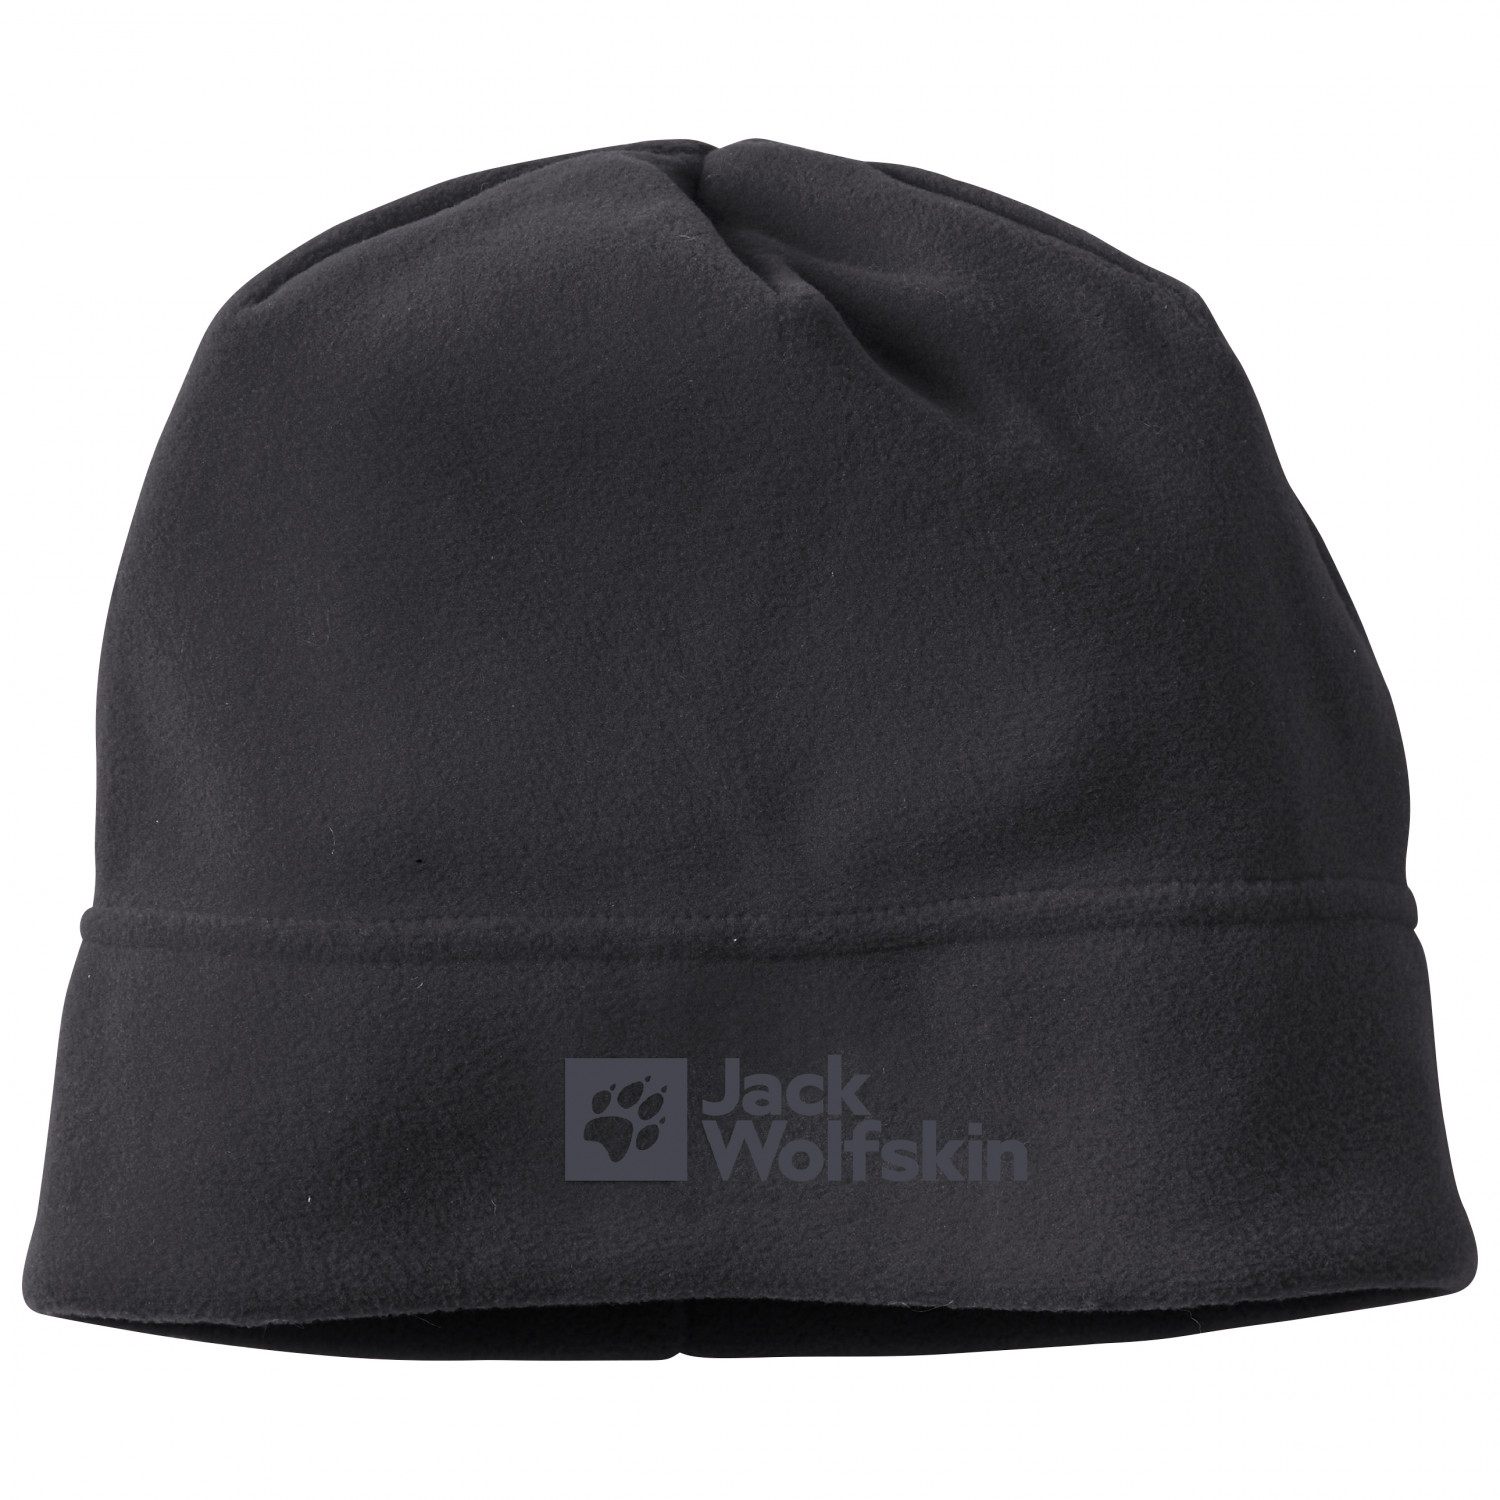 Кепка Jack Wolfskin Real Stuff Beanie, черный женская шапка зимняя ангорская вязаная шапка осенняя теплая лыжная шапка аксессуар для подростков спорт на открытом воздухе